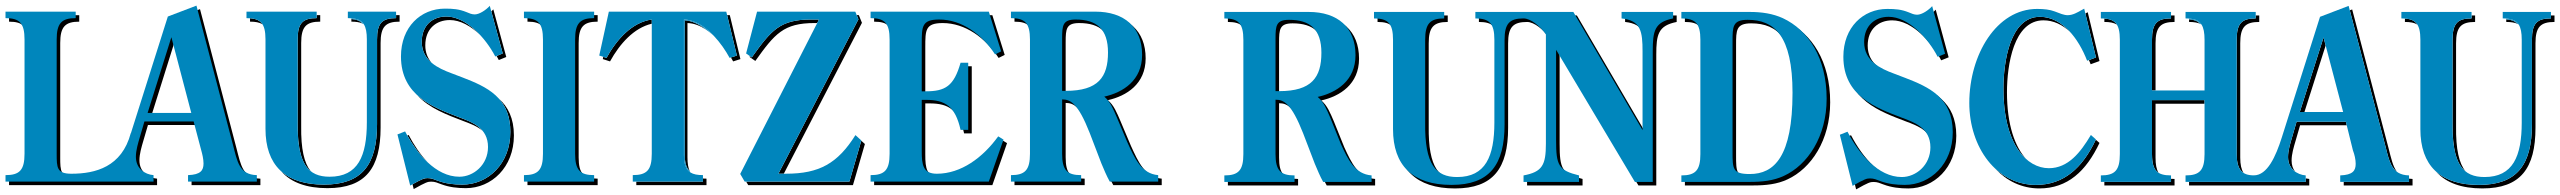 Lausitzer_Rundschau_logo.svg